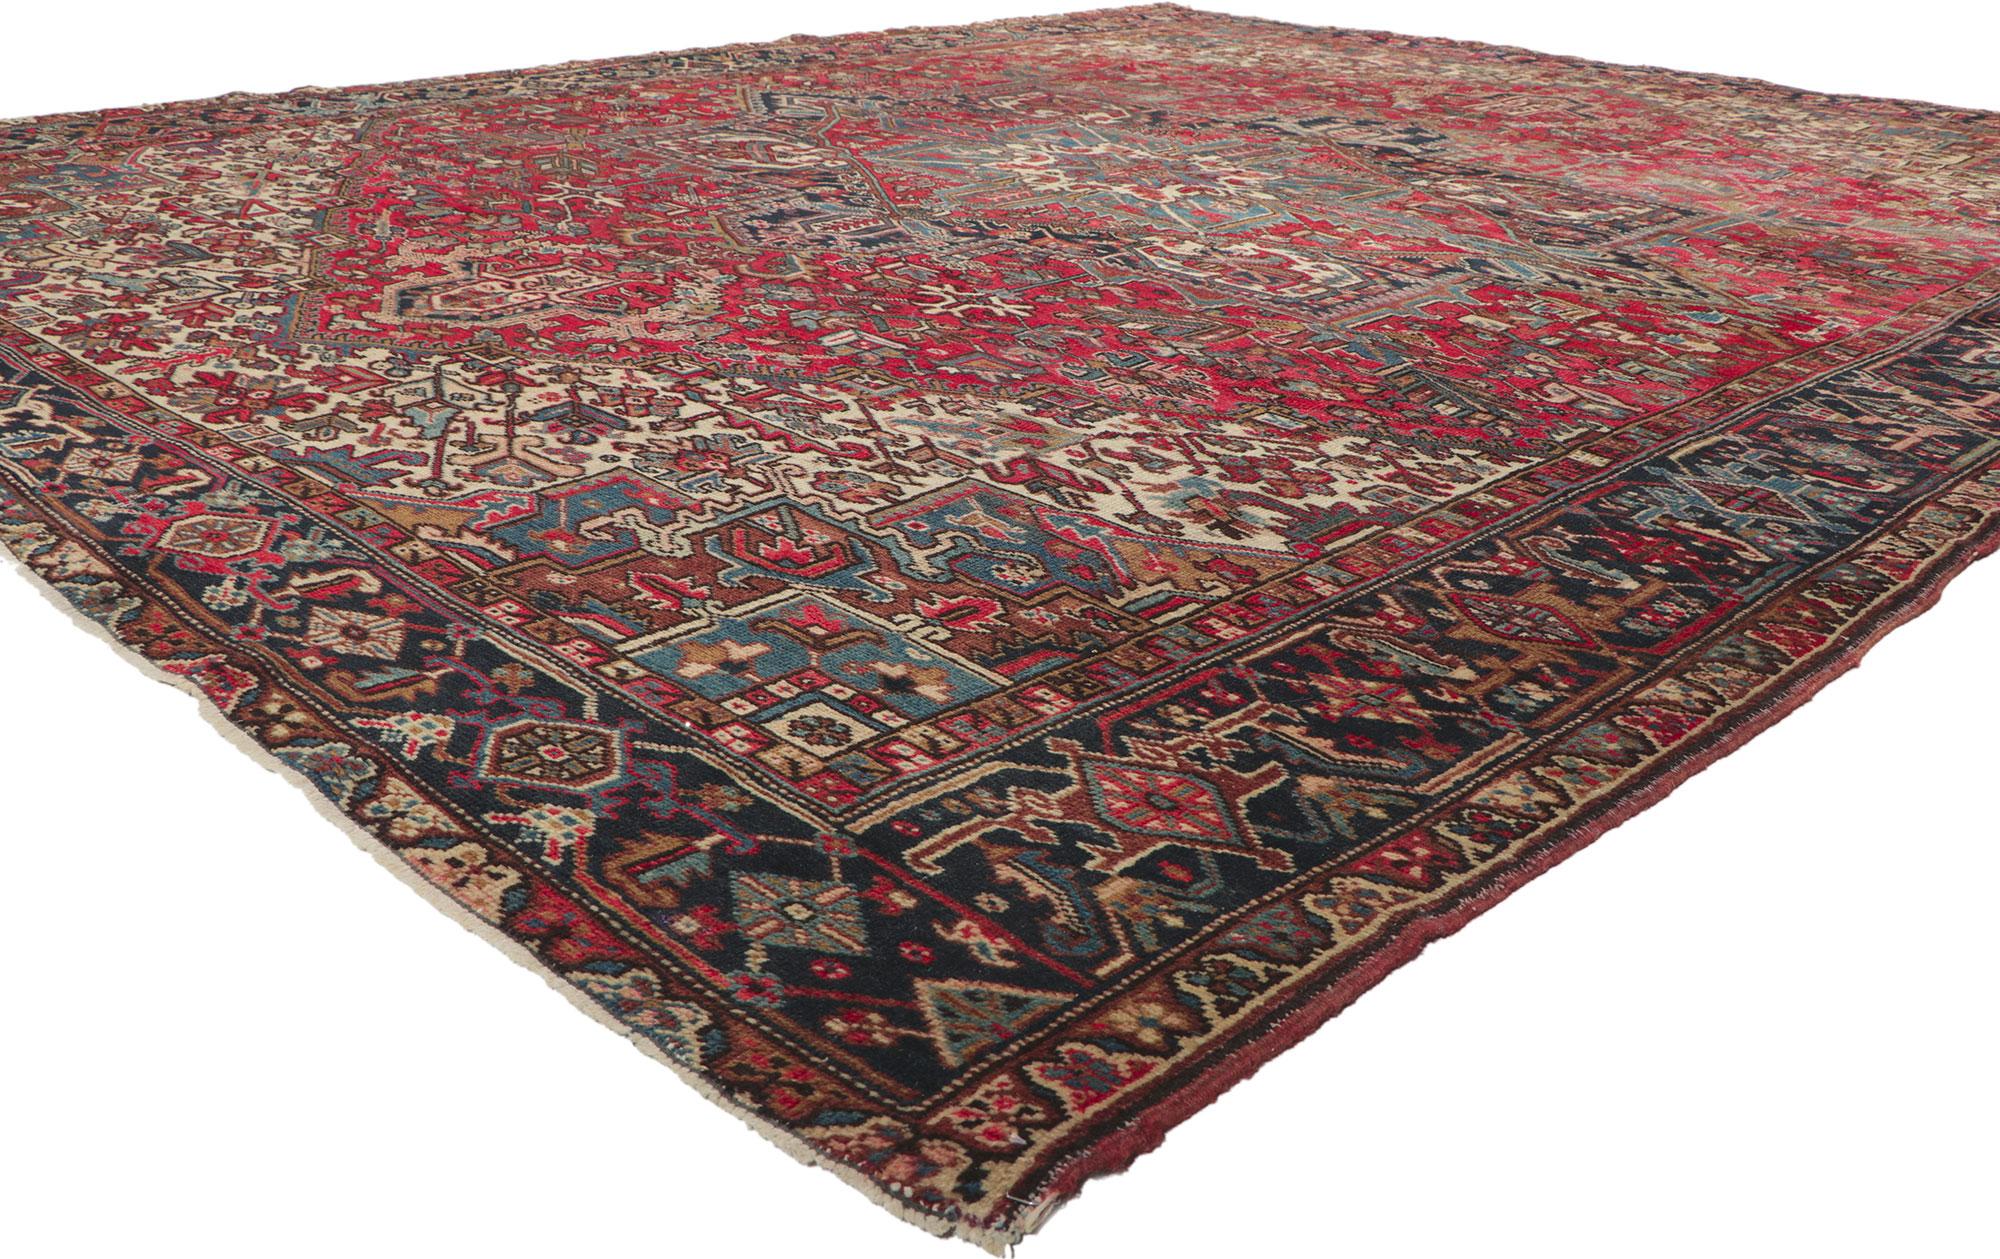 78349 Vintage Persian Heriz Rug, 09'08 x 12'02. Dieser handgeknüpfte persische Heriz-Teppich aus Wolle im Vintage-Stil besticht durch seinen zeitlosen Stil und seine unglaubliche Detailtreue und Textur. Das geometrische Design und die raffinierte